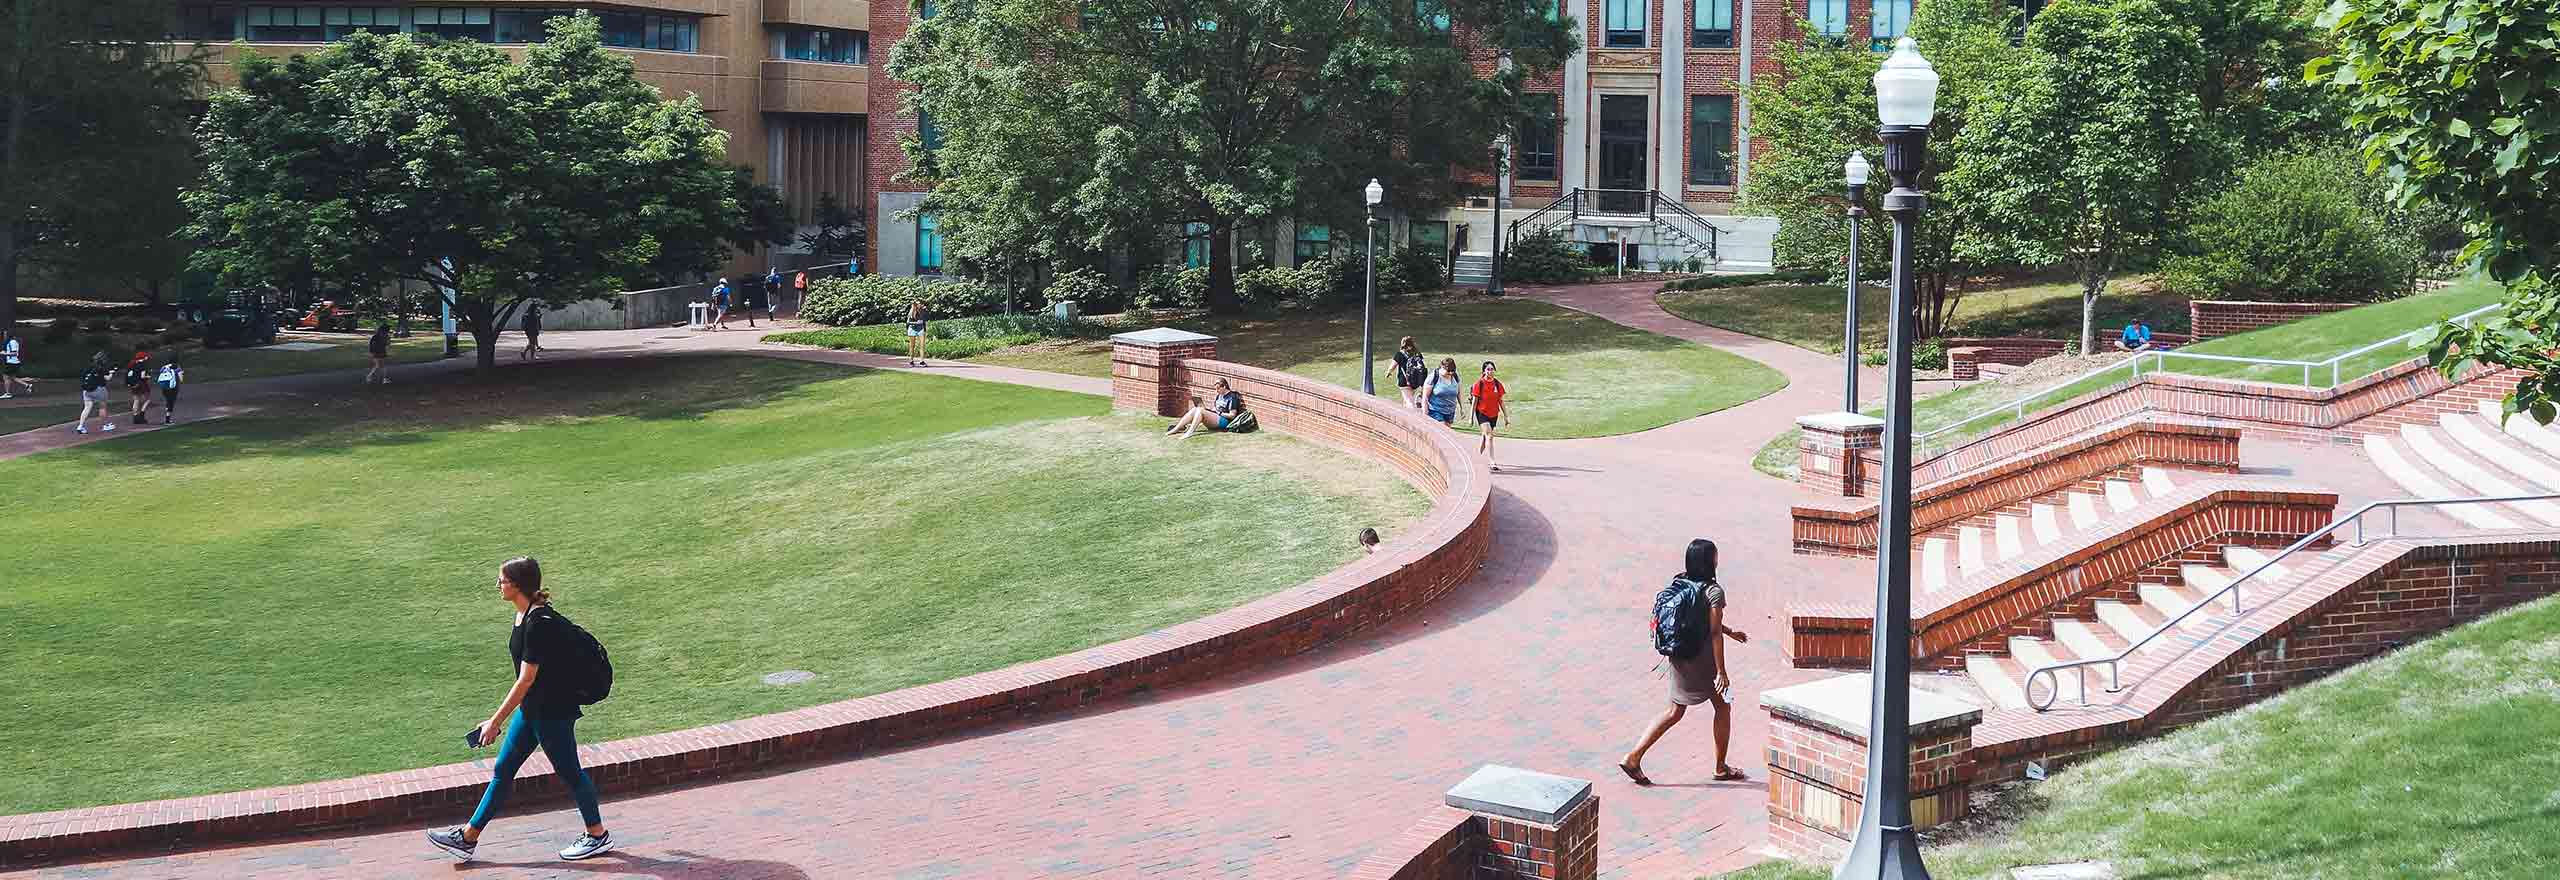 Estudiantes caminando por un campus